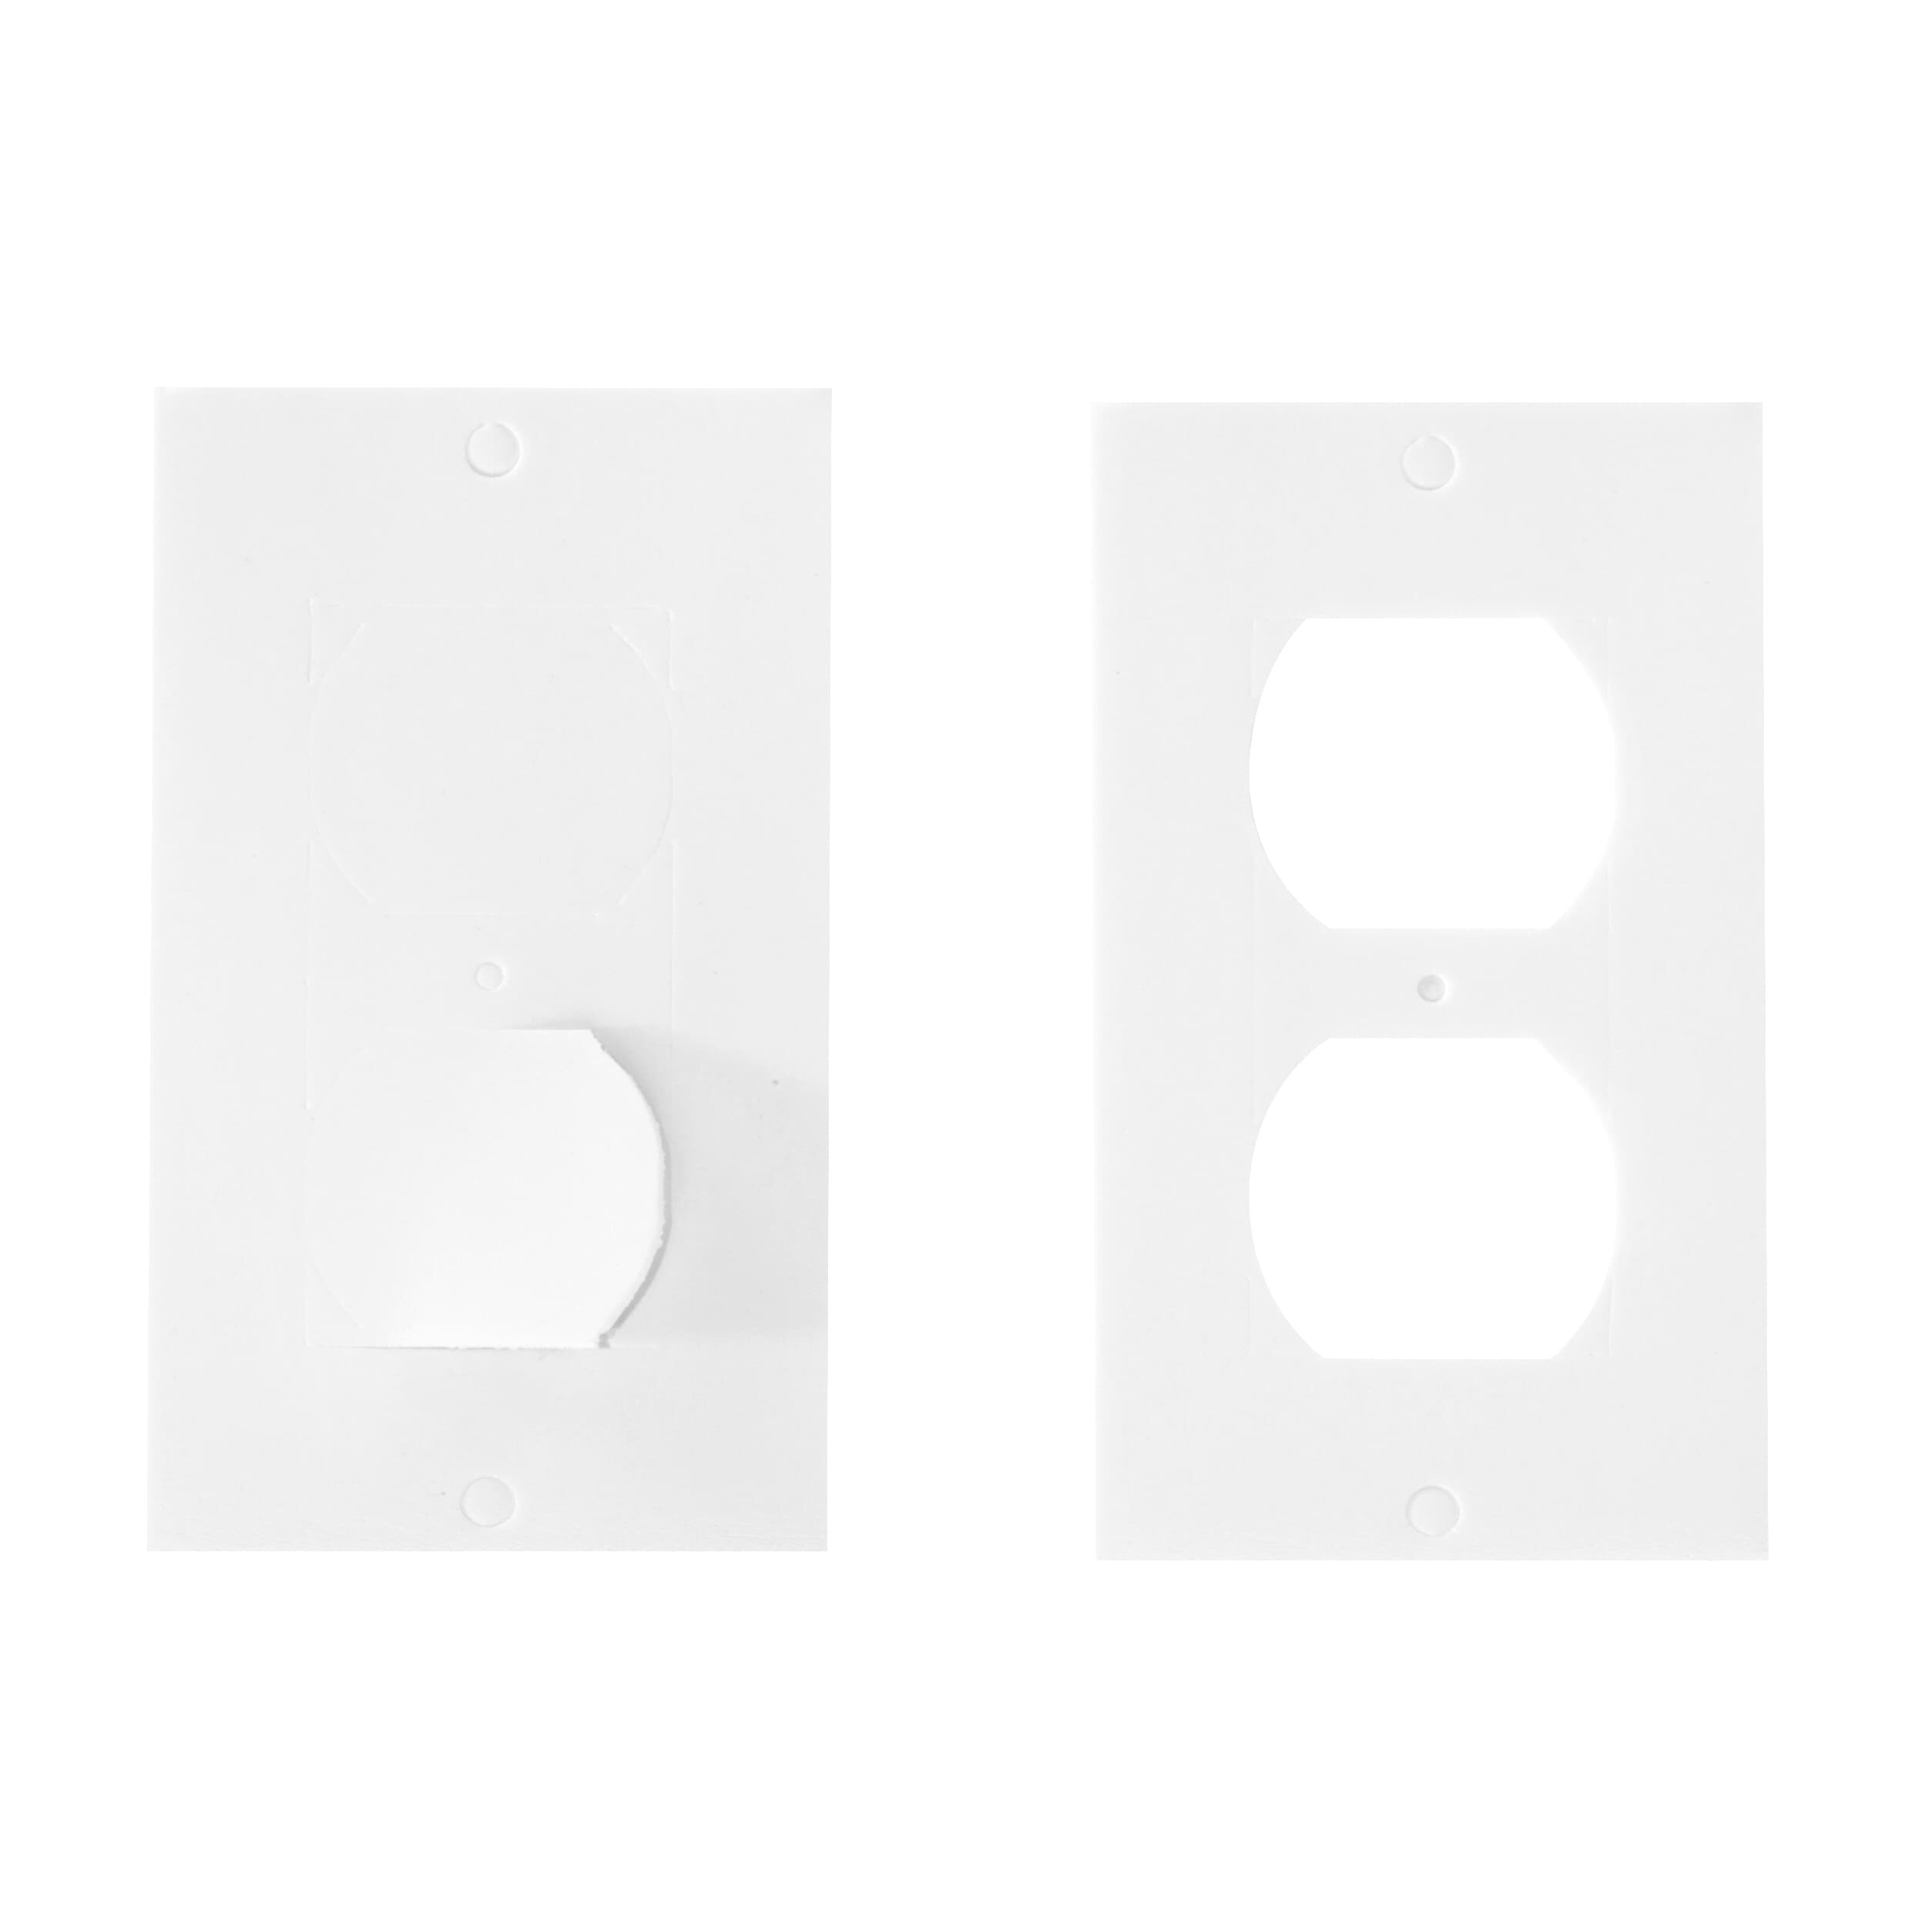 M-D 100-ft x 2-in x 1/8-in Clear Polyethylene Window Tape